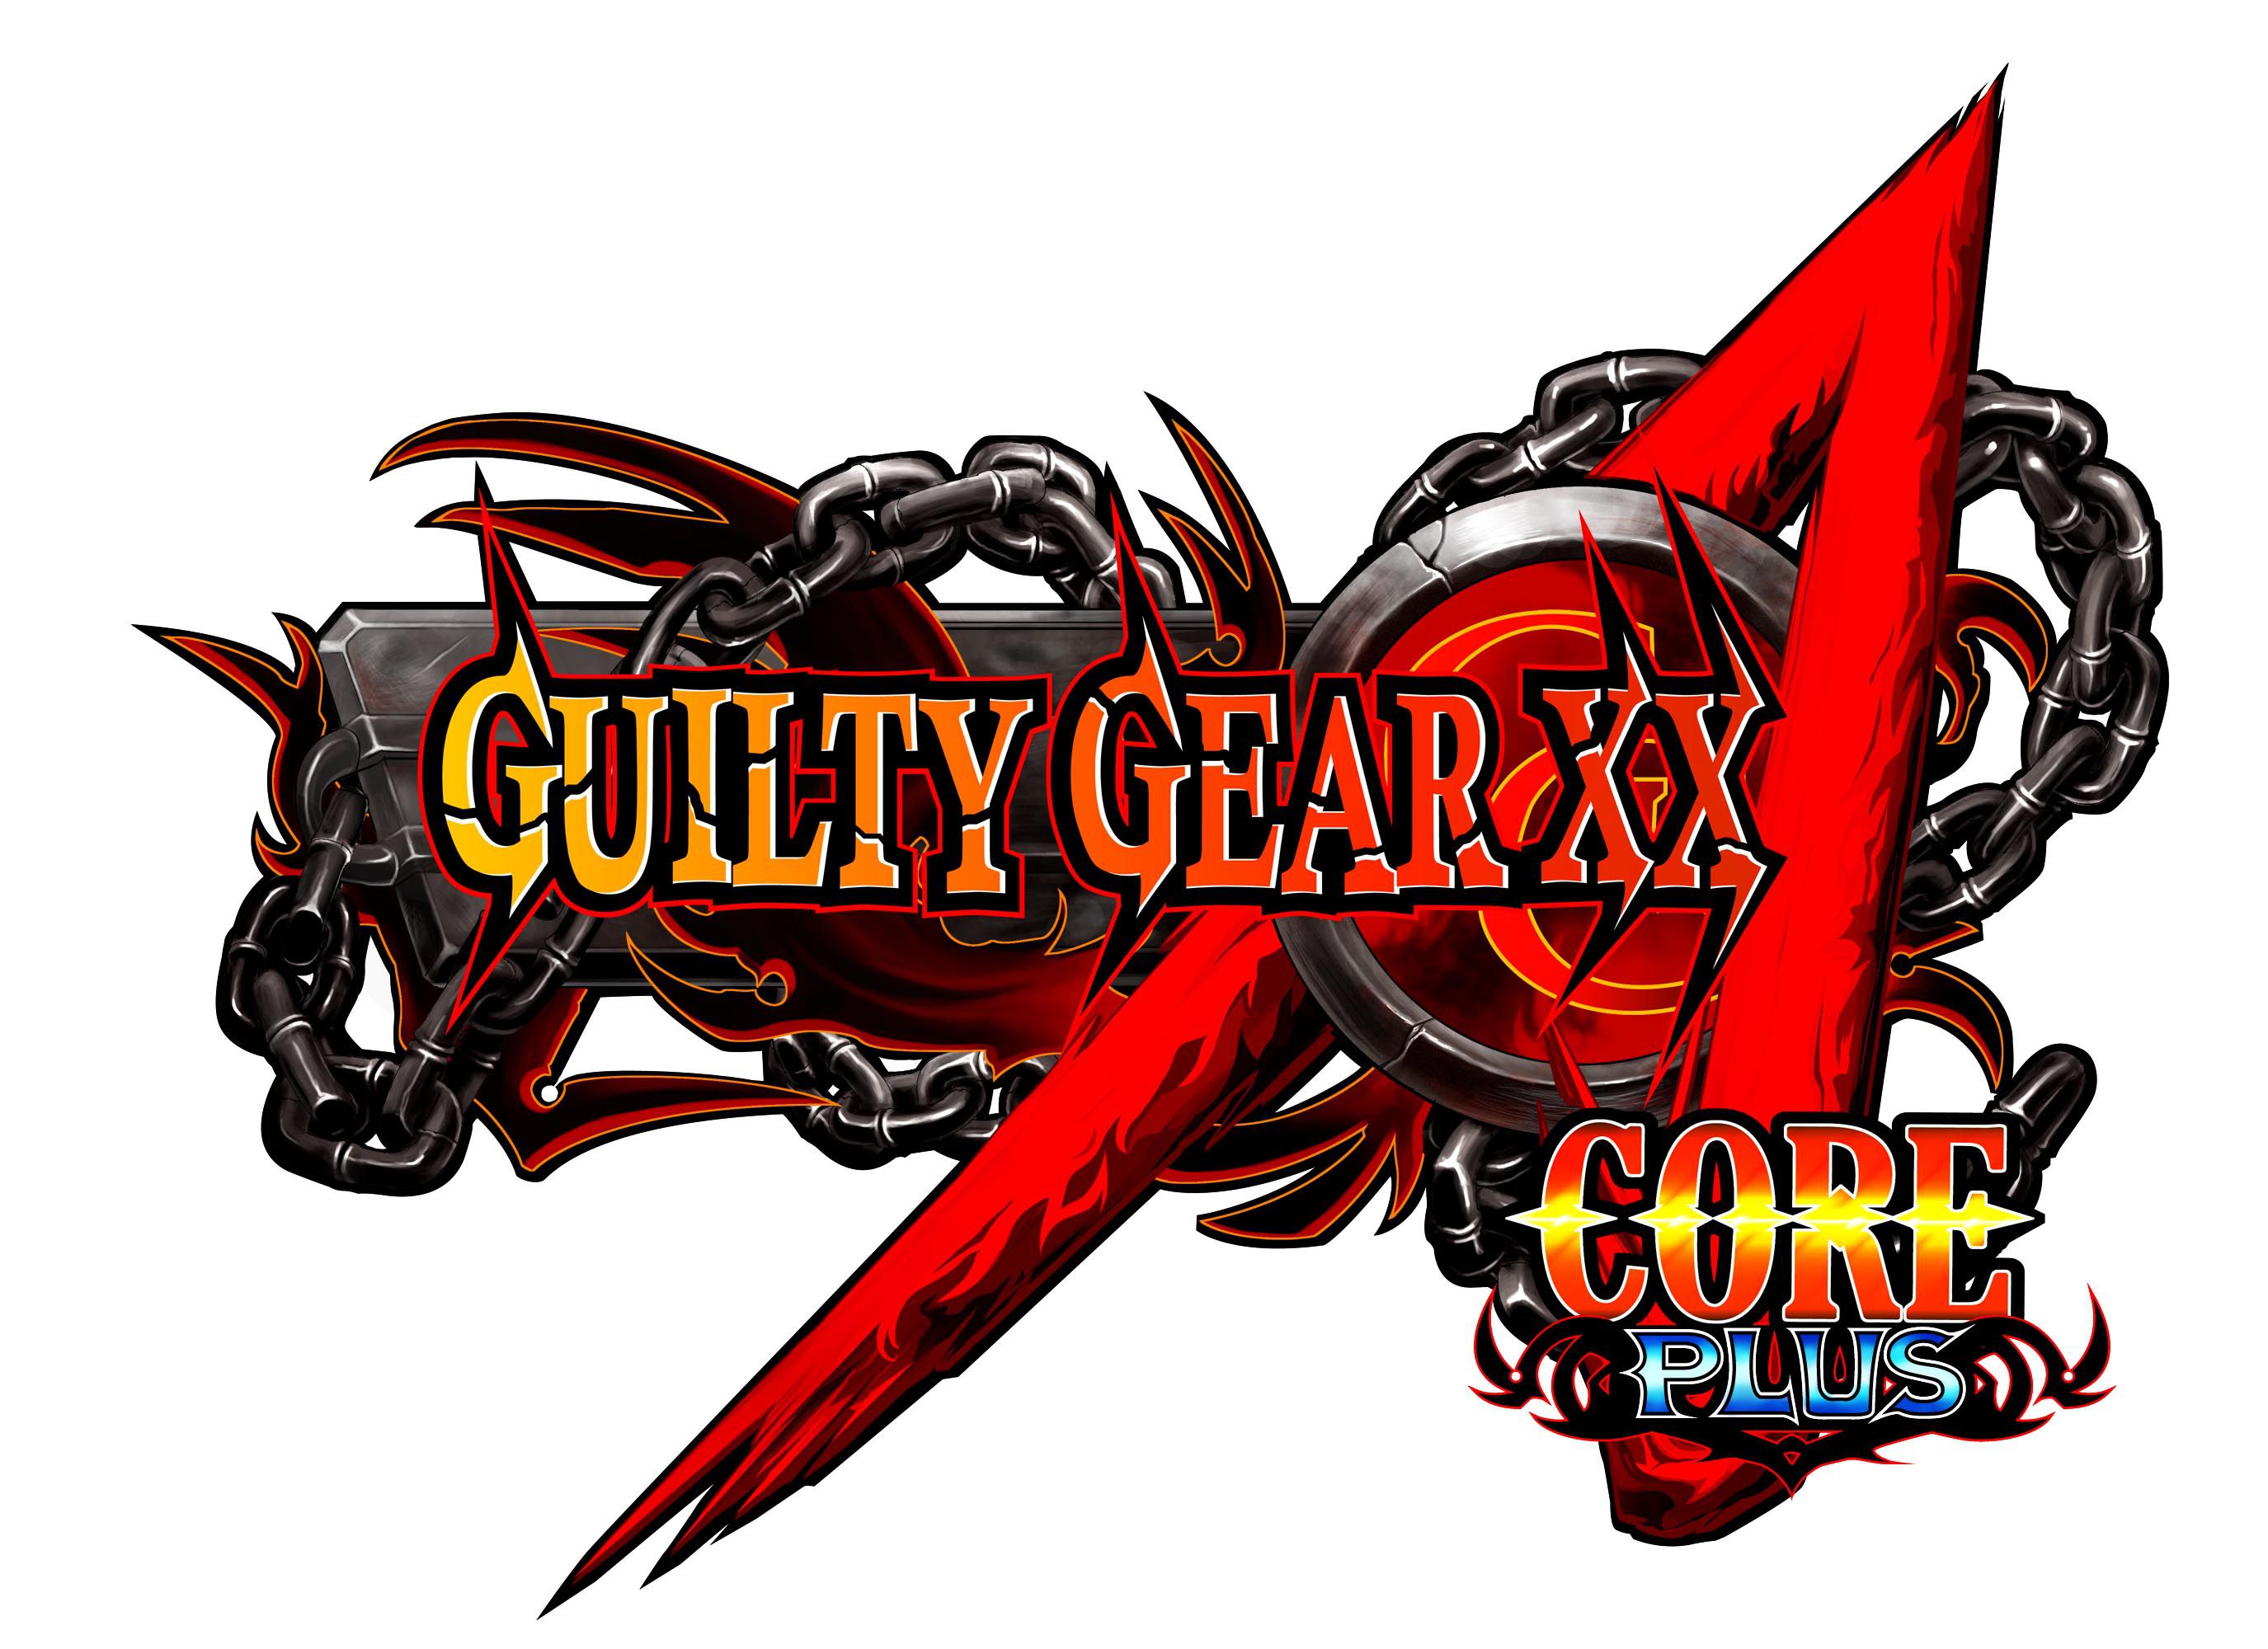 Guilty Gear XX Core plus (8)